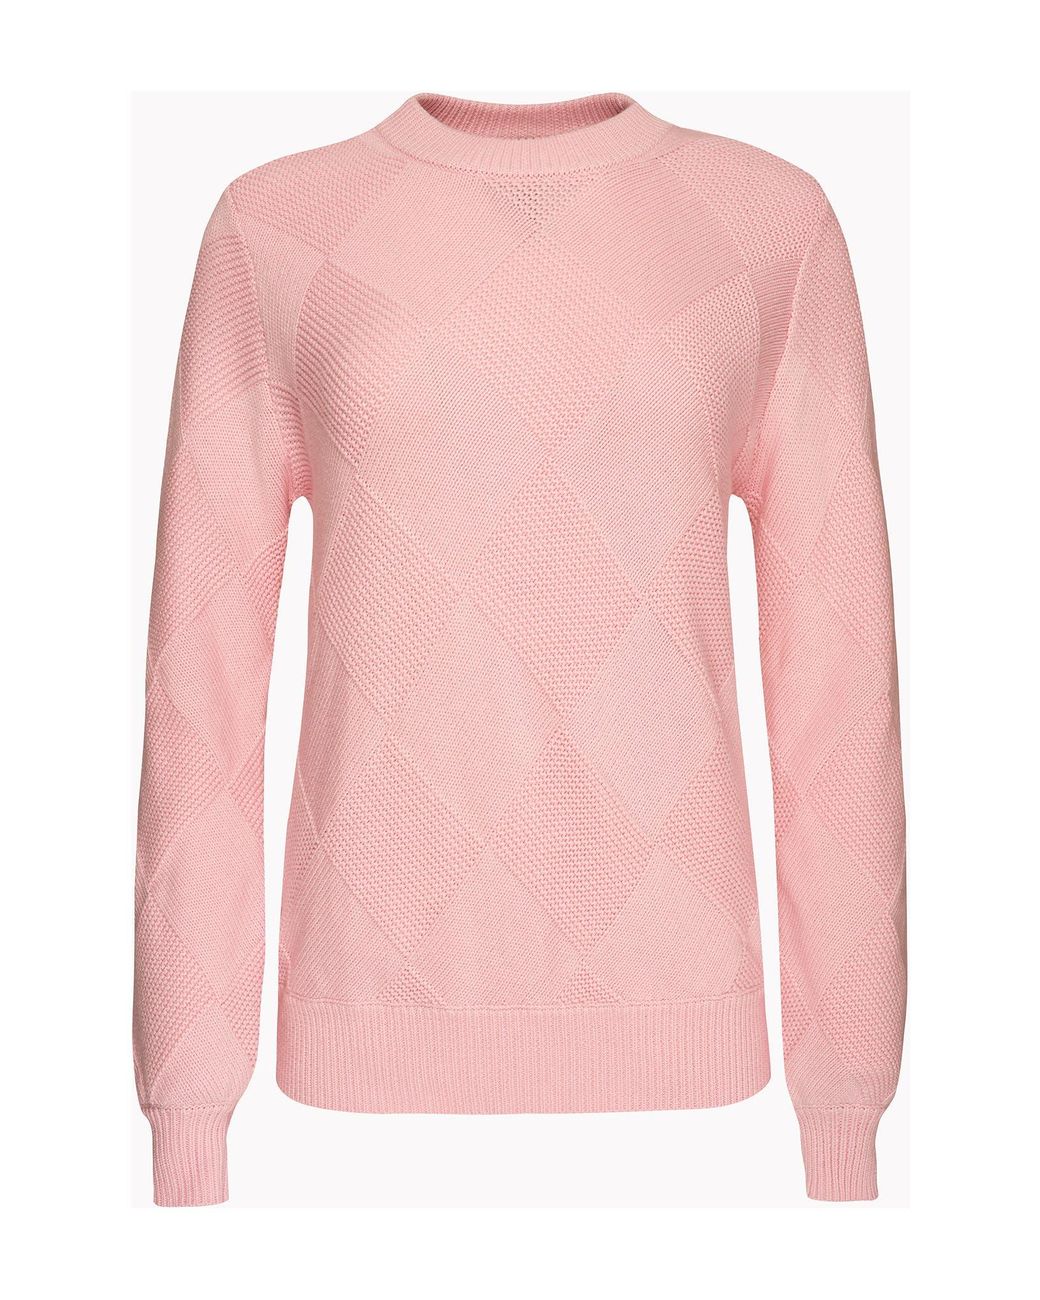 Sweaty Betty Diamond Knit Cotton & Wool Sweater in Pink | Lyst